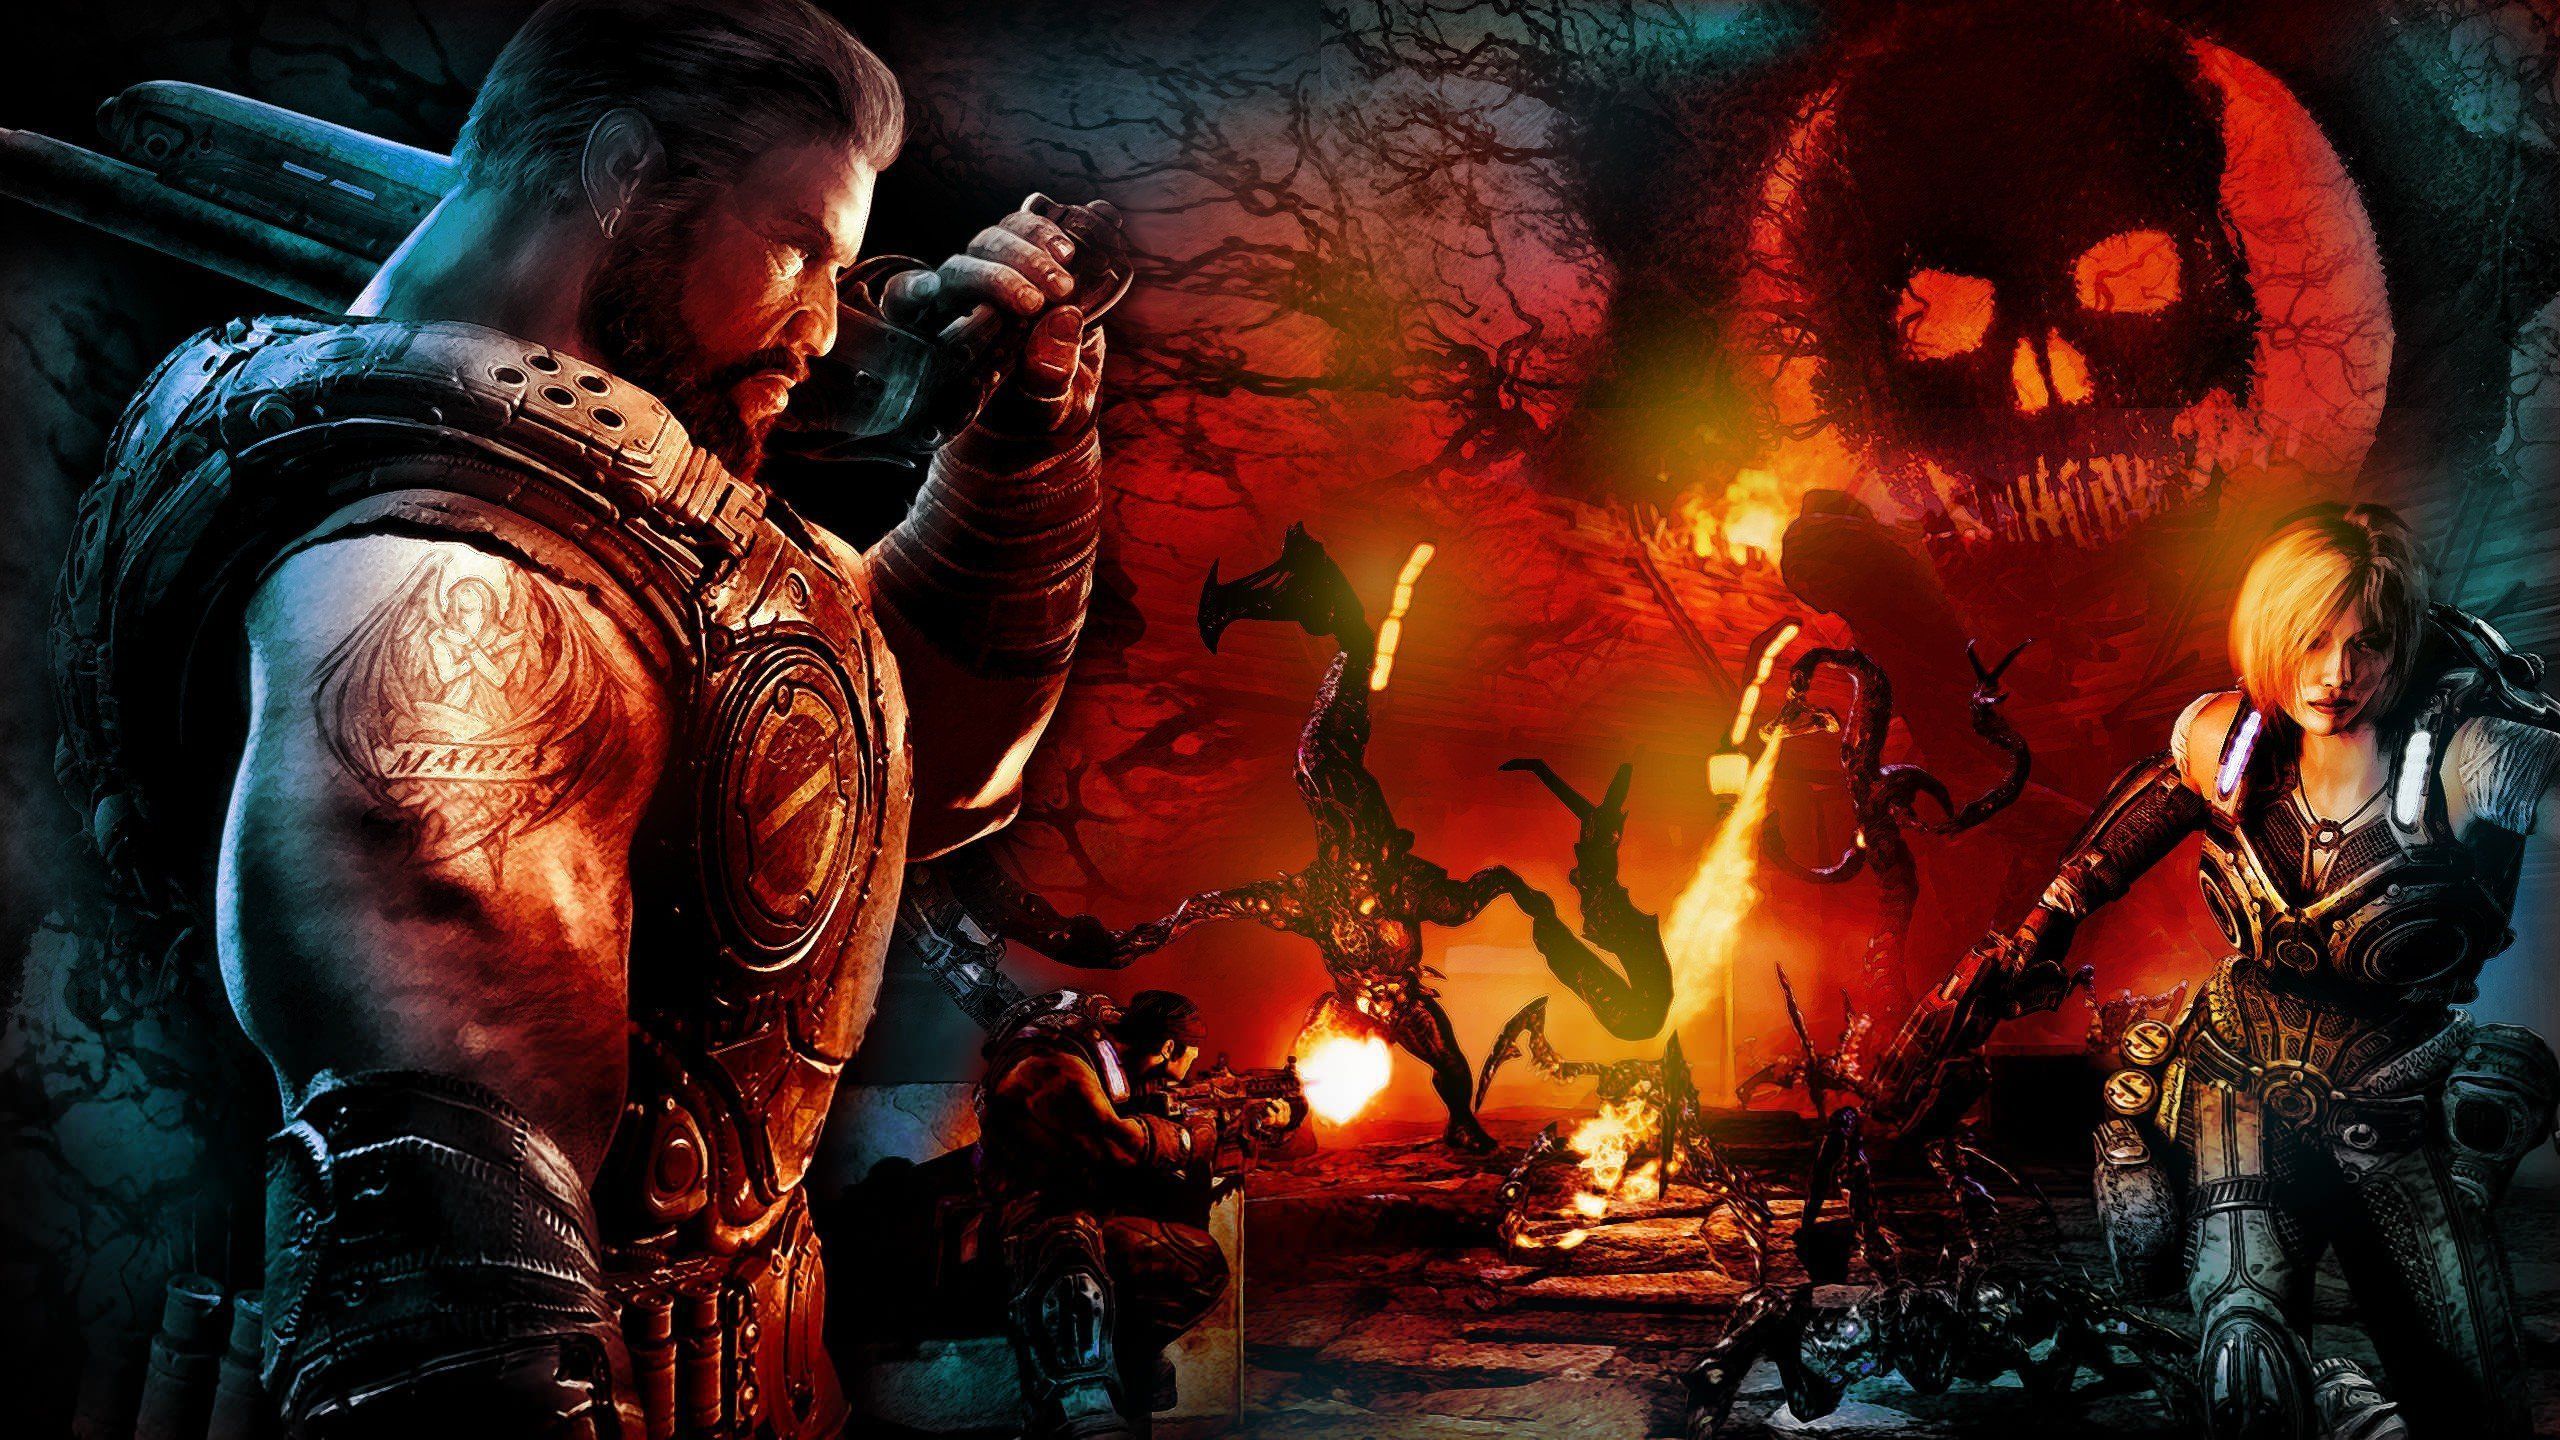 Gears of War destruction Gears Of War 3 wallpaper | 2560x1440 ...